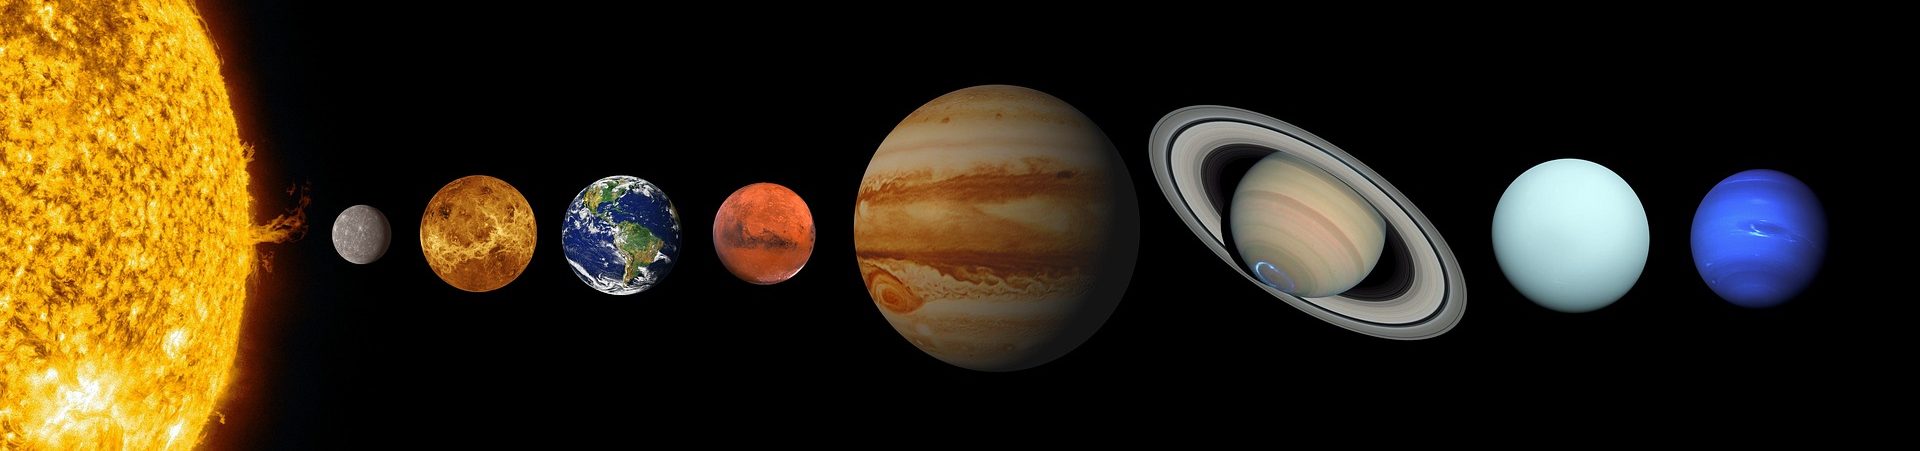 Planety sluneční soustavy velikosti planet